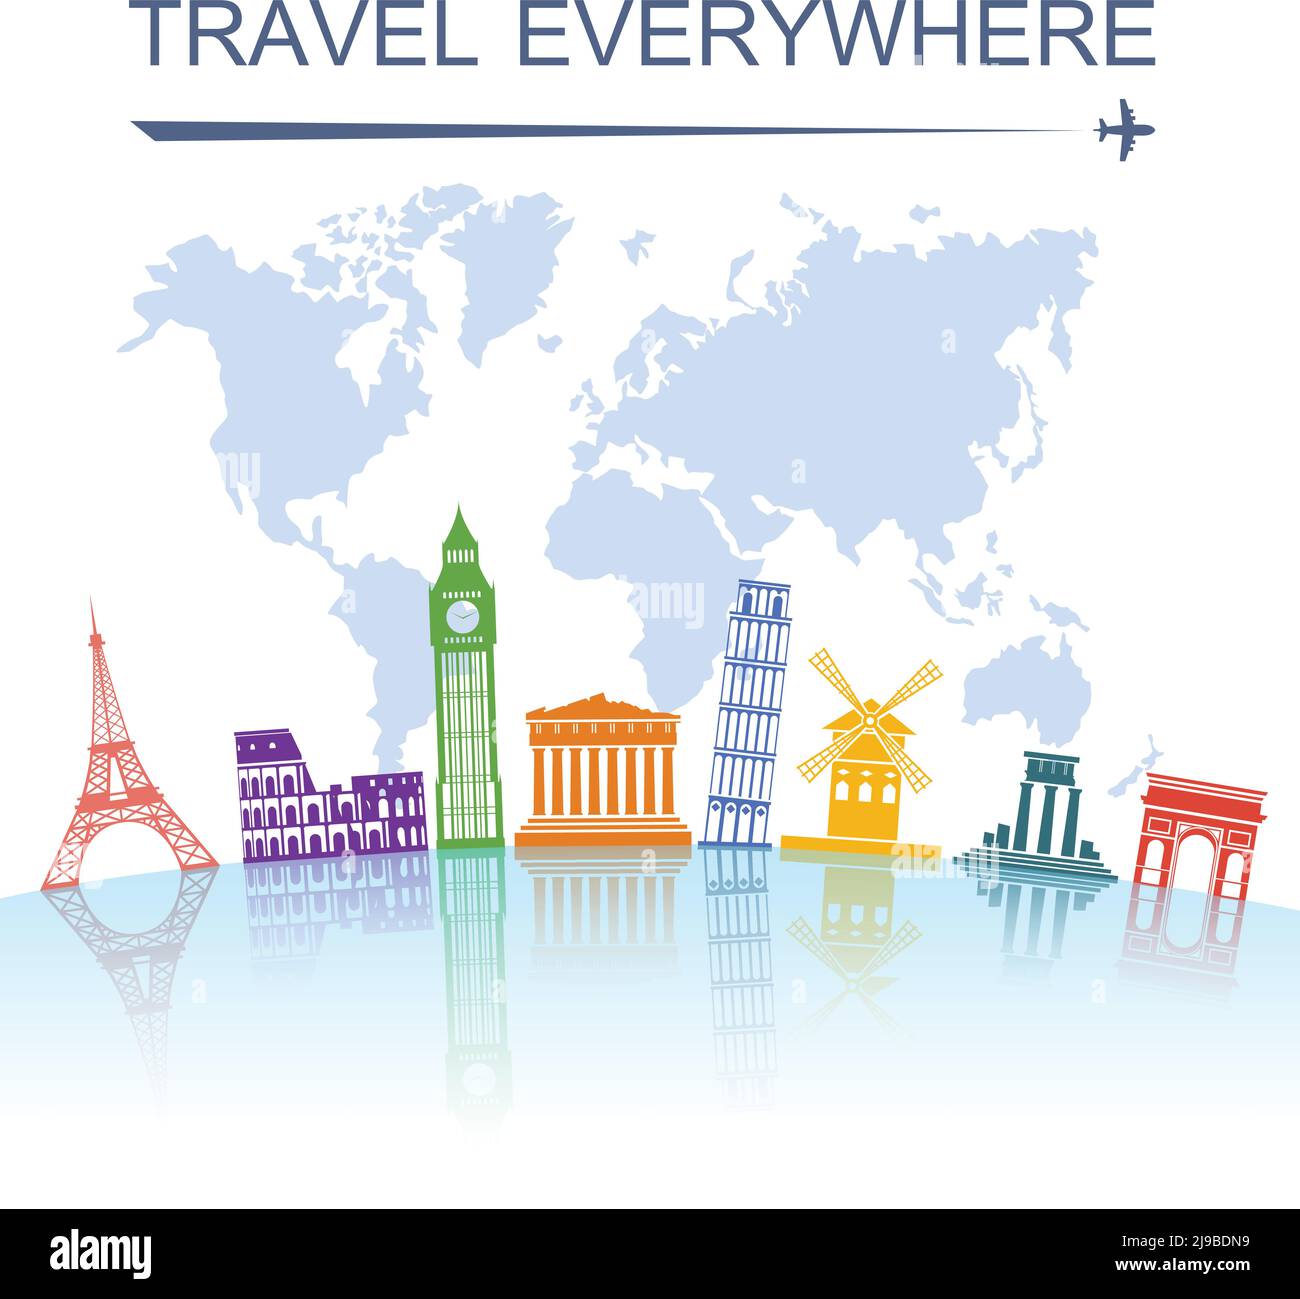 Agenzia di viaggi spettacolare giro turistico in tutto il mondo punto di riferimento tour poster con torre italiana di pisa illustrazione vettoriale astratta Illustrazione Vettoriale